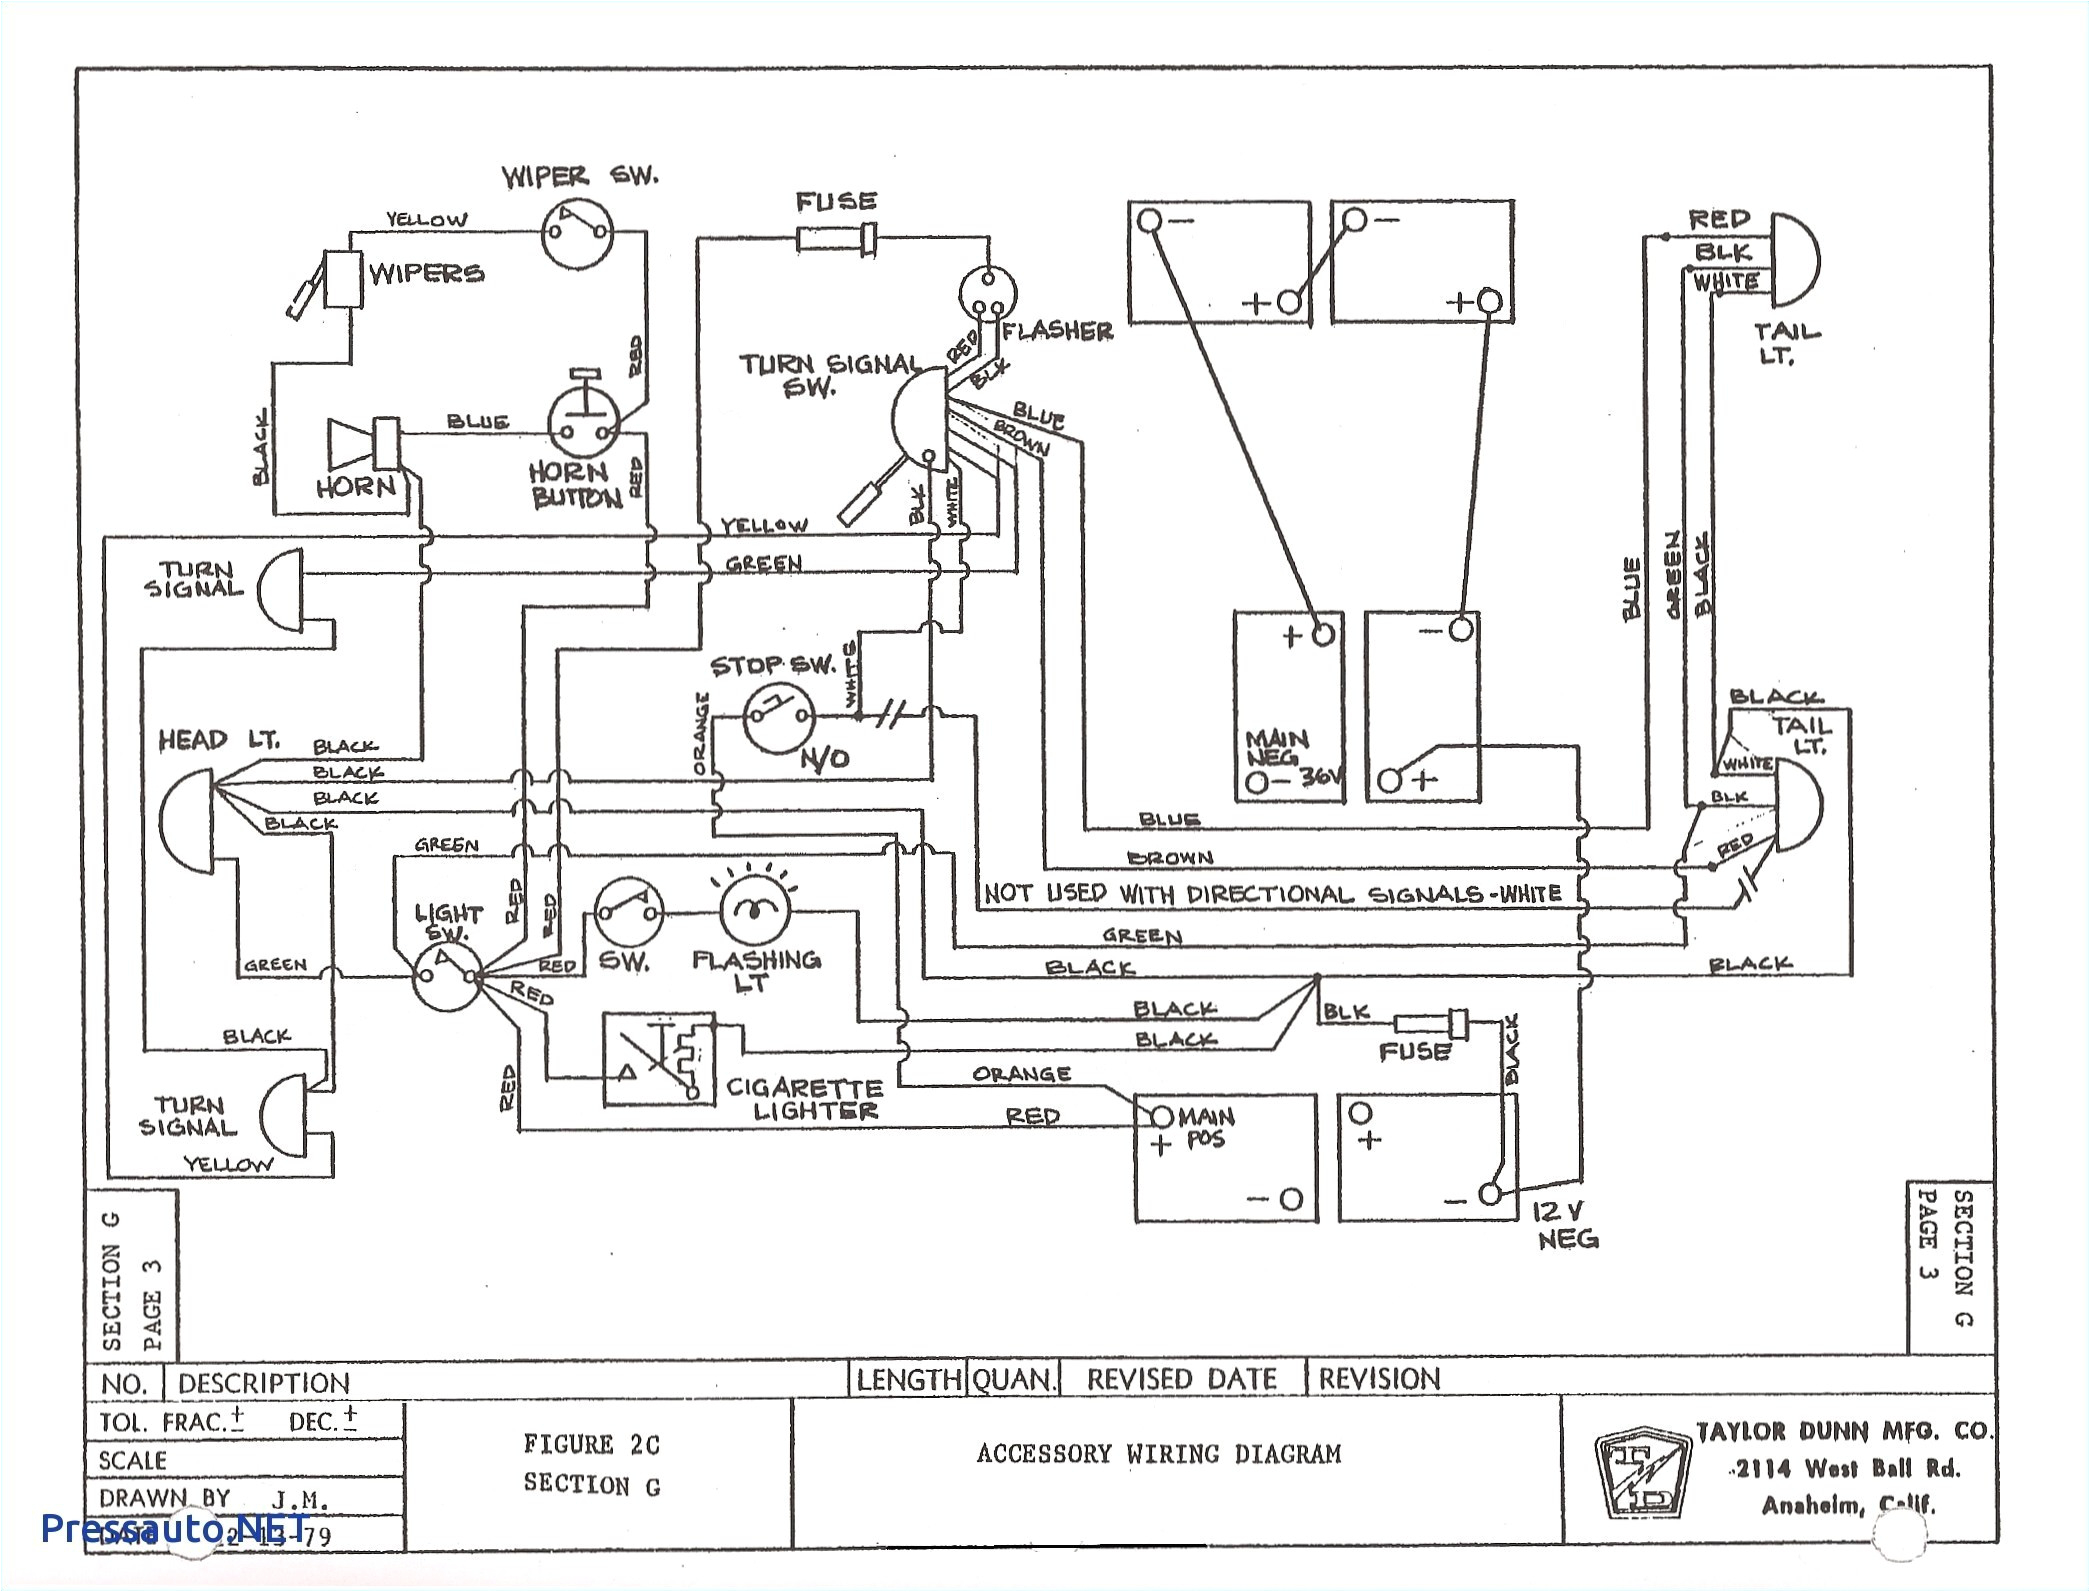 ezgo rxv 48 volt wiring diagram wiring diagram review ezgo rxv 48v wiring diagram ez go